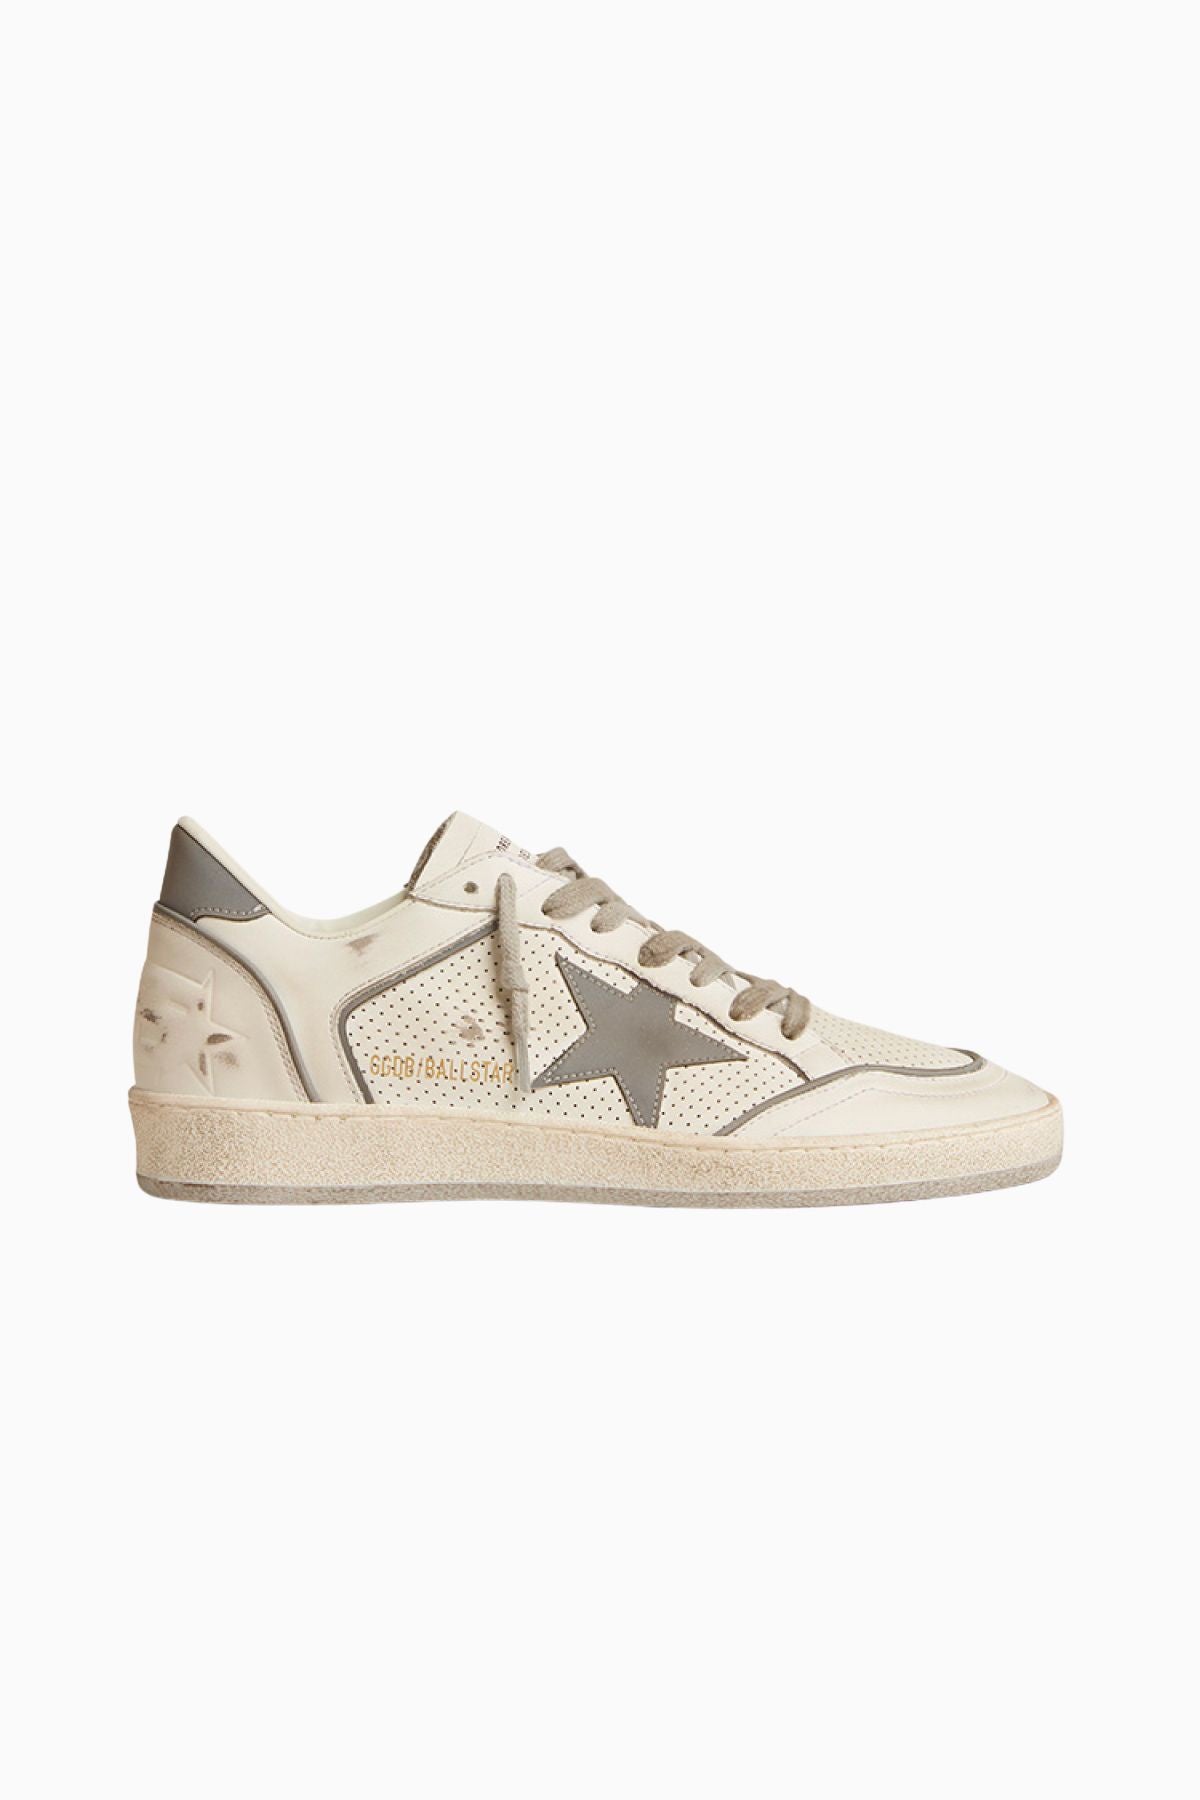 Golden Goose Ball Star Sneaker - White/ Silver